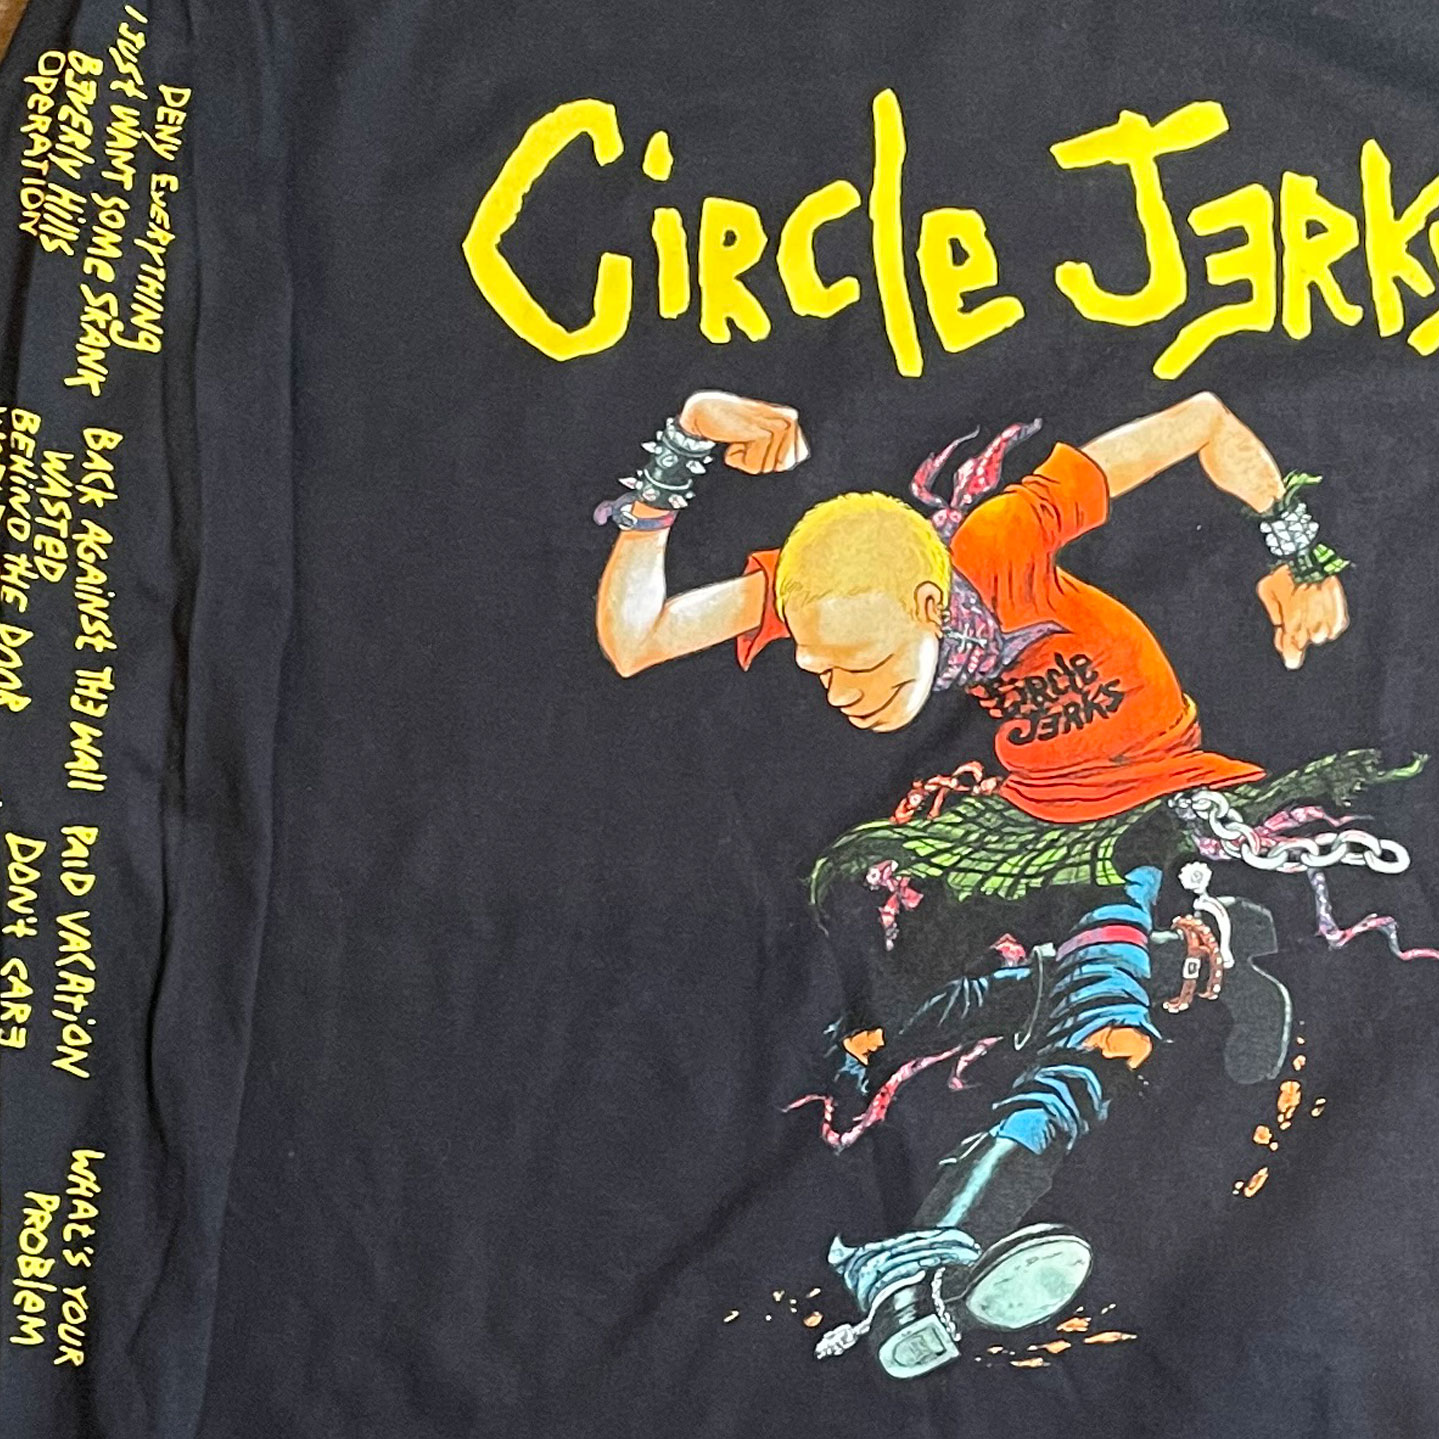 Circle Jerks ロングスリーブTシャツ Skunker オフィシャル！